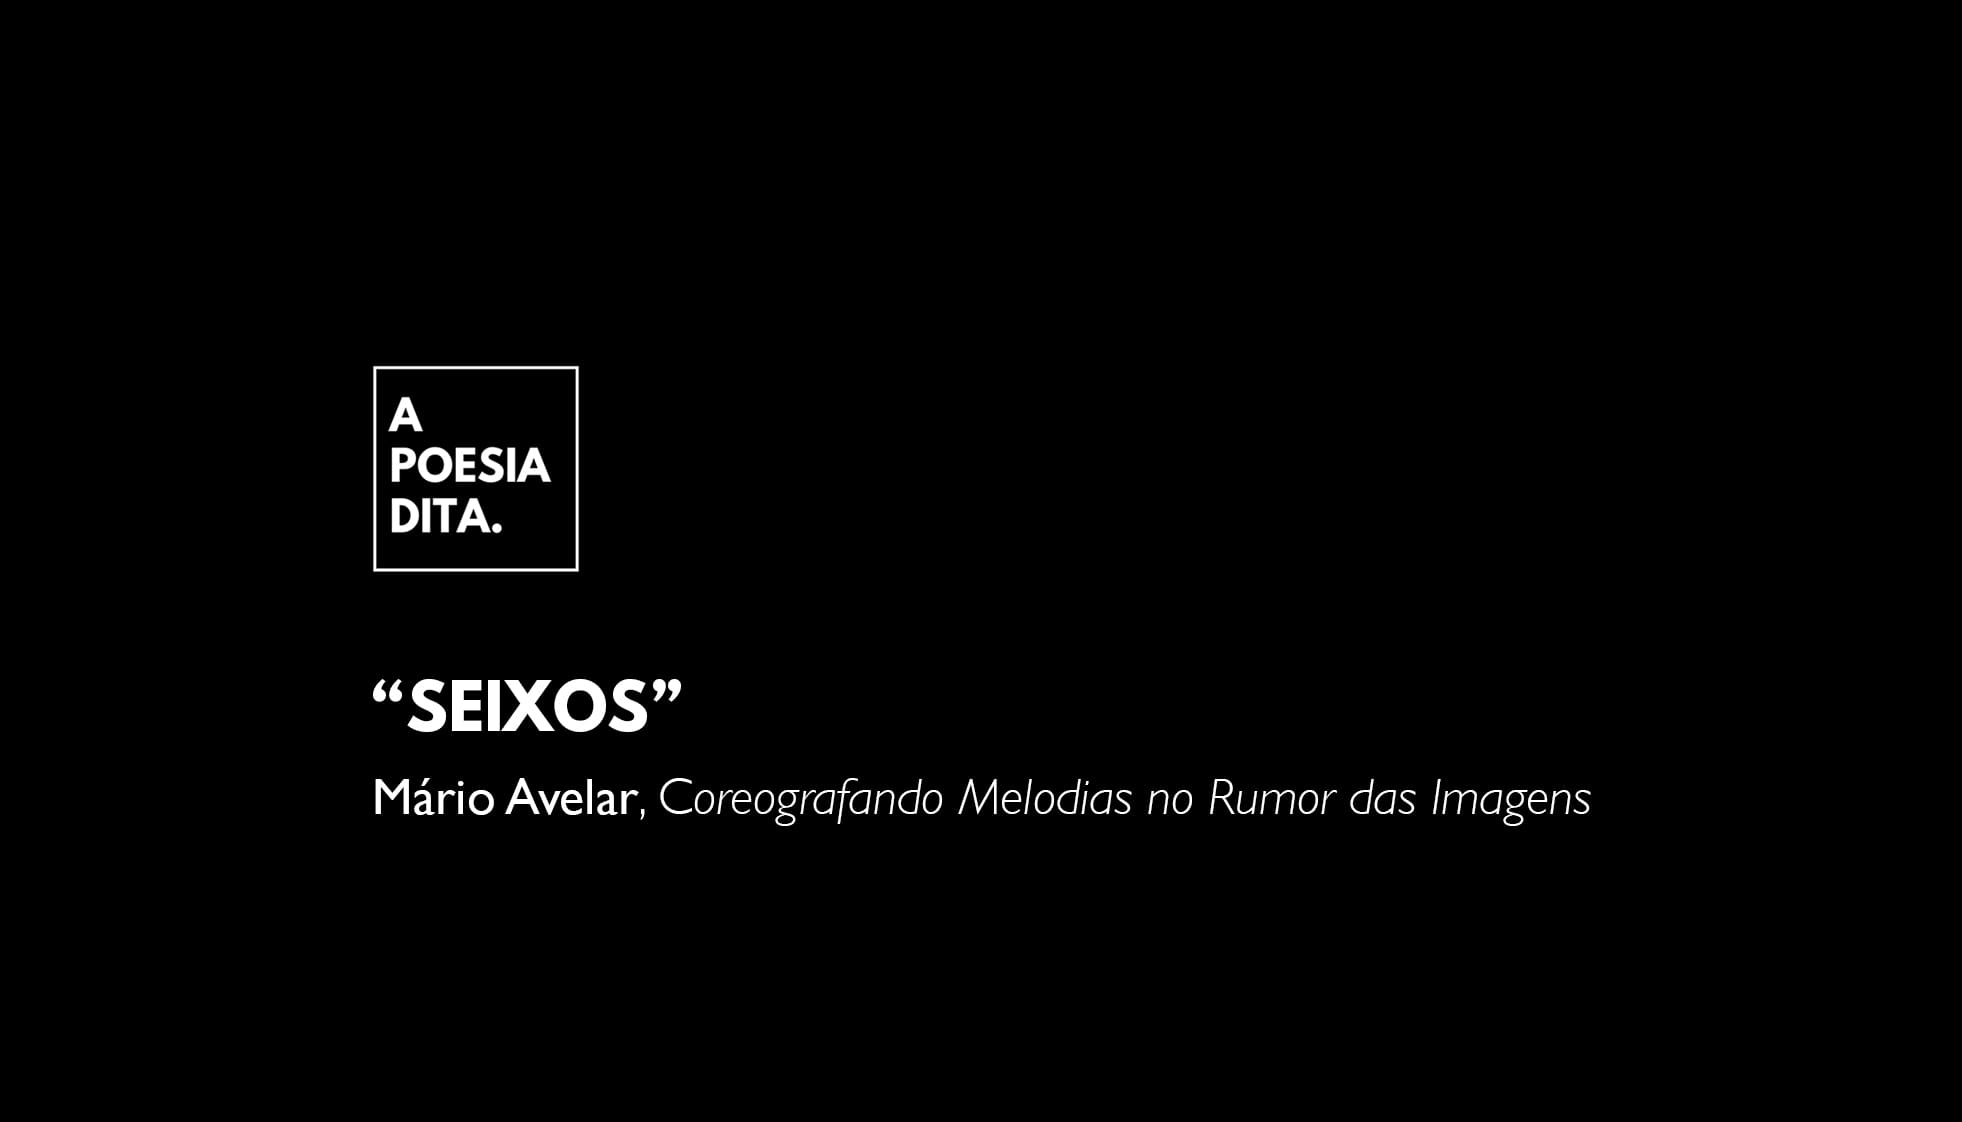 Seixos, um poema de Mário Avelar n’A Poesia Dita.